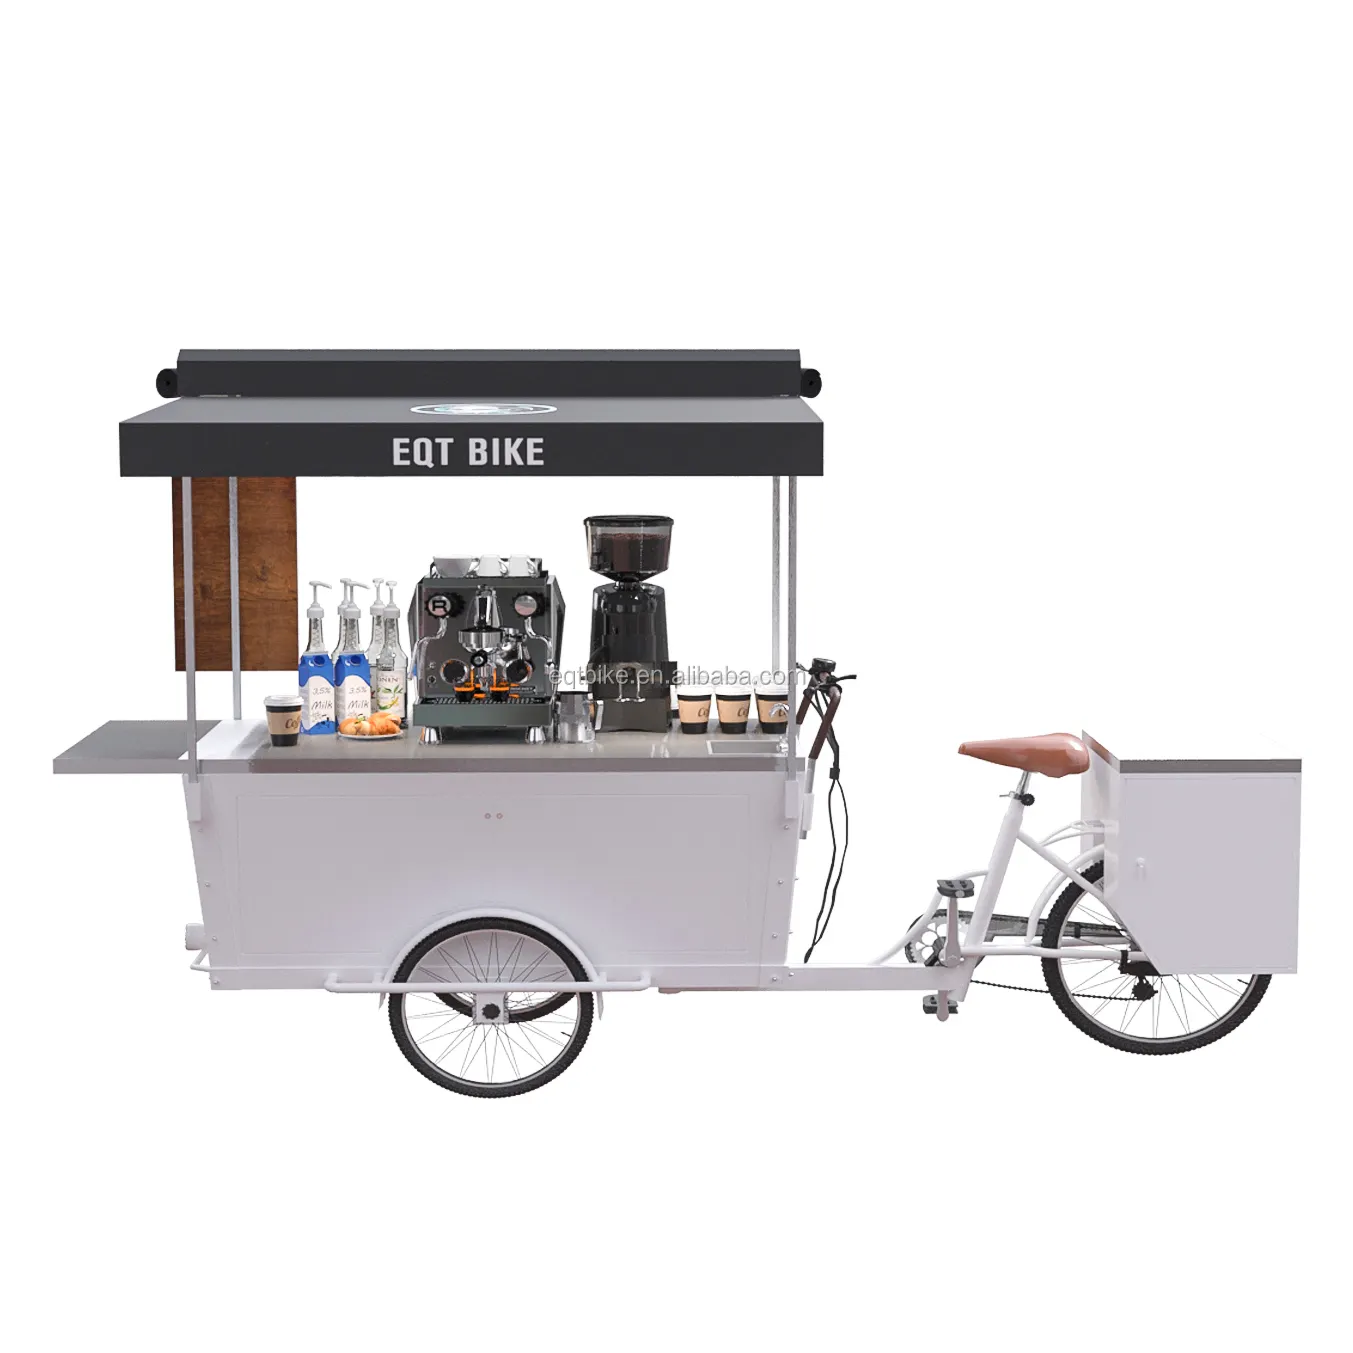 Aangepaste Mobiele Trolley Vervoer Karren Of Koffie Bike Voor Vending